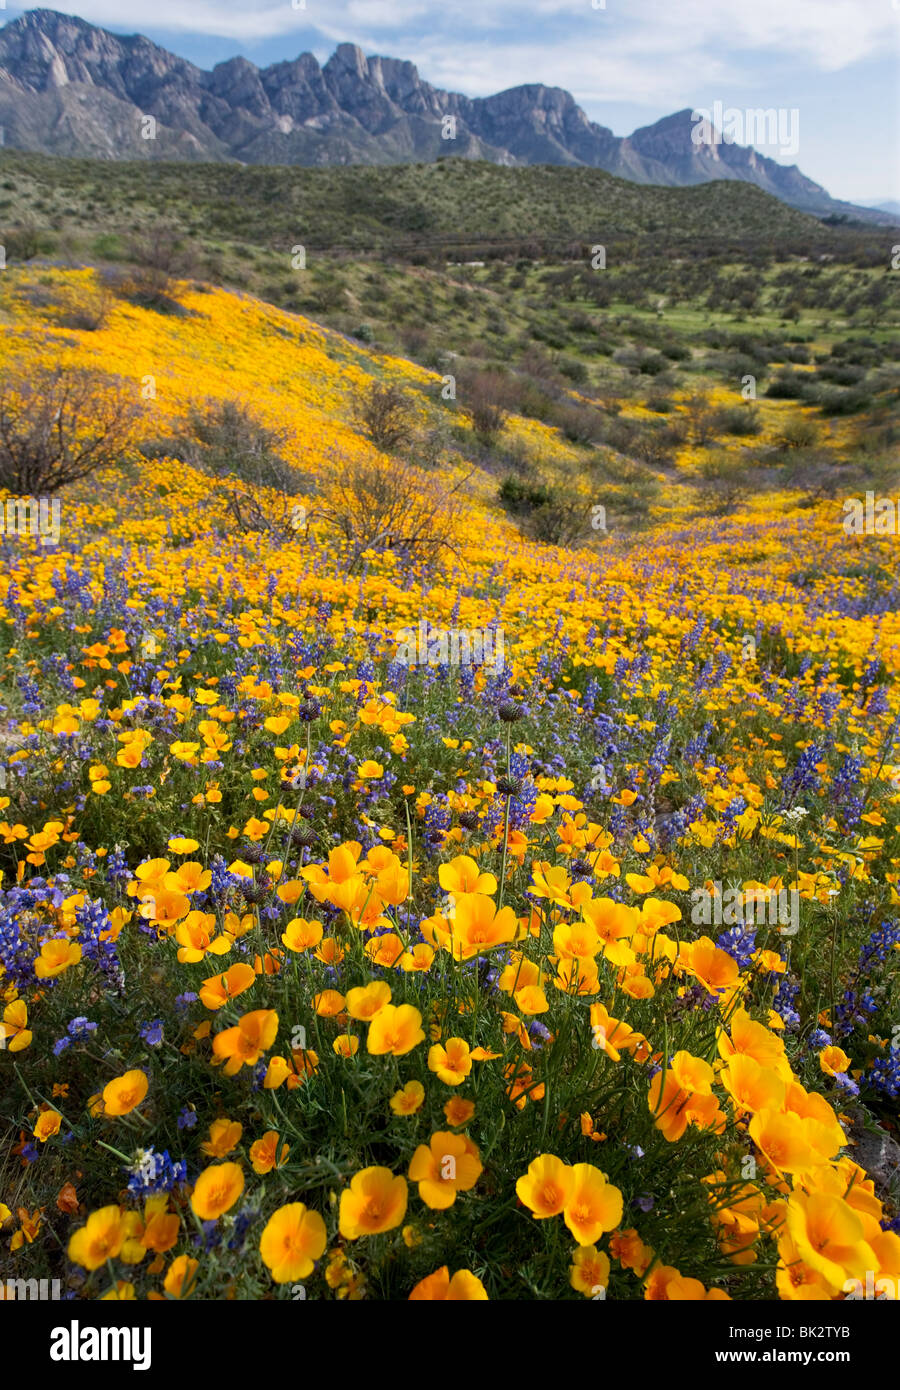 Una mujer caminatas pasado un gran campo de naranja y amarillo, las amapolas y flores silvestres en el Parque Estatal de Catalina, cerca de Tucson, Arizona. Foto de stock